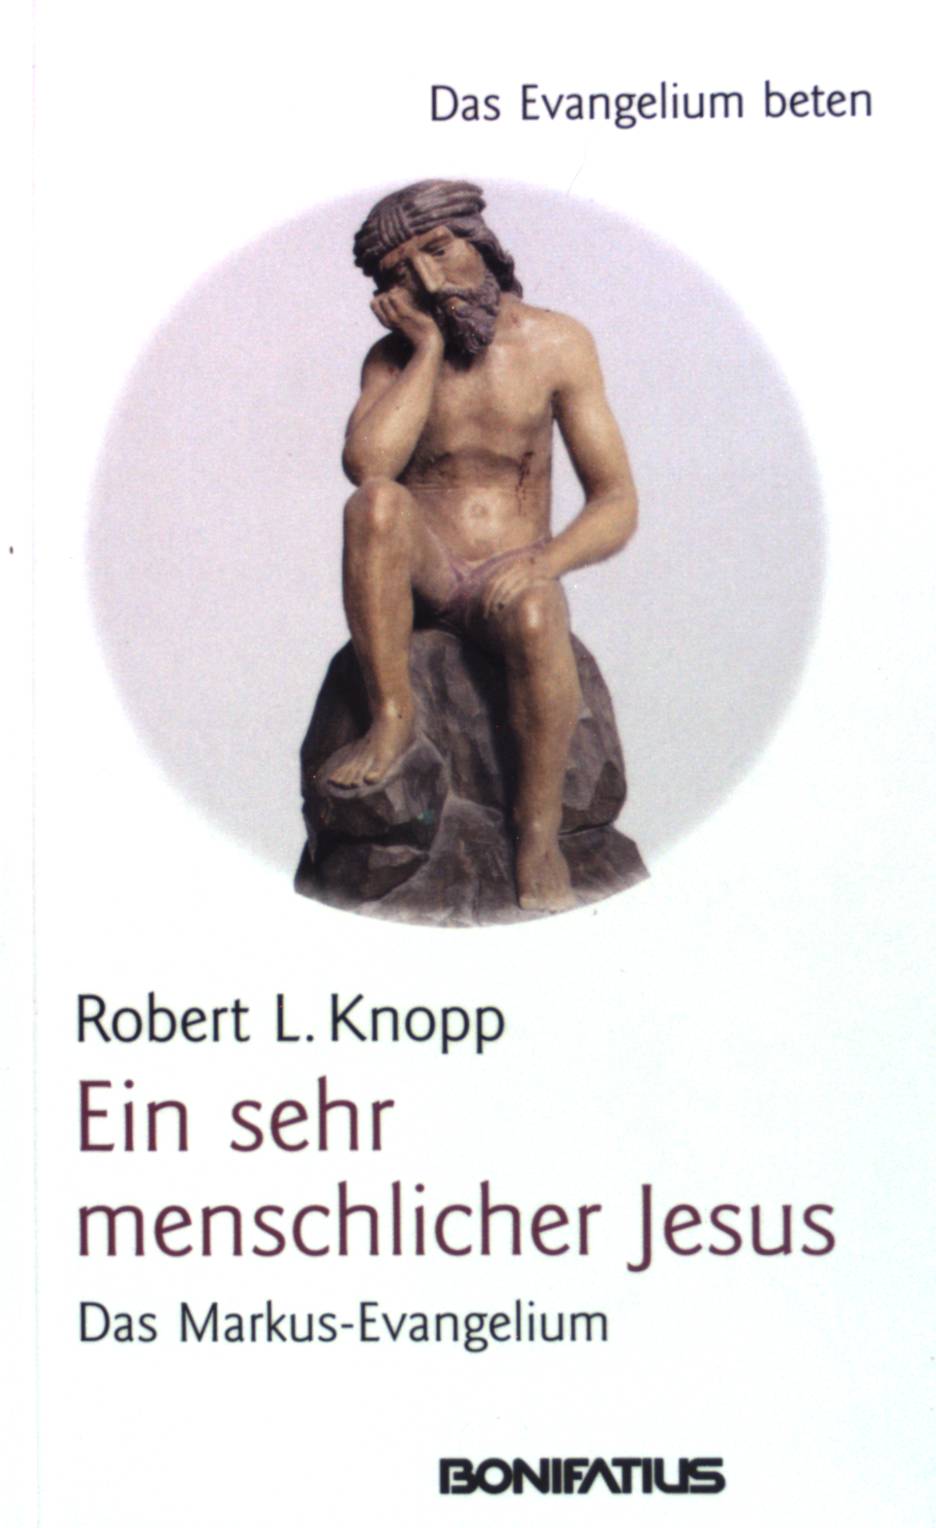 Ein sehr menschlicher Jesus: Das Markus-Evangelium. Das Evangelium beten - Knopp, Robert L.